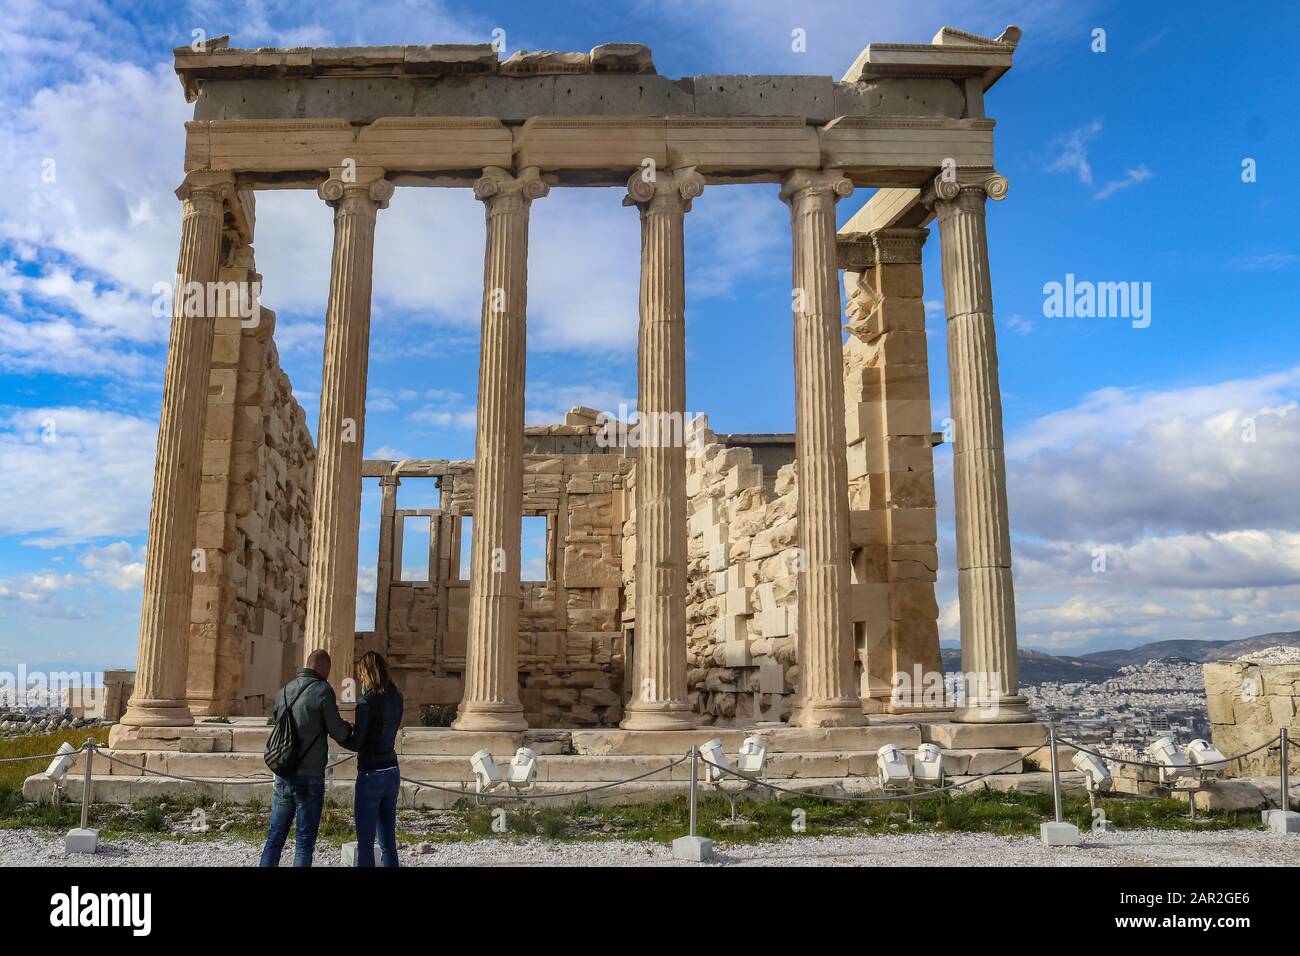 Der Tempel der Echtheion Akropolis Athen Griechenland mit zwei Touristen vor den Dächern Athens und einem wunderschönen Himmel im Hintergrund Stockfoto